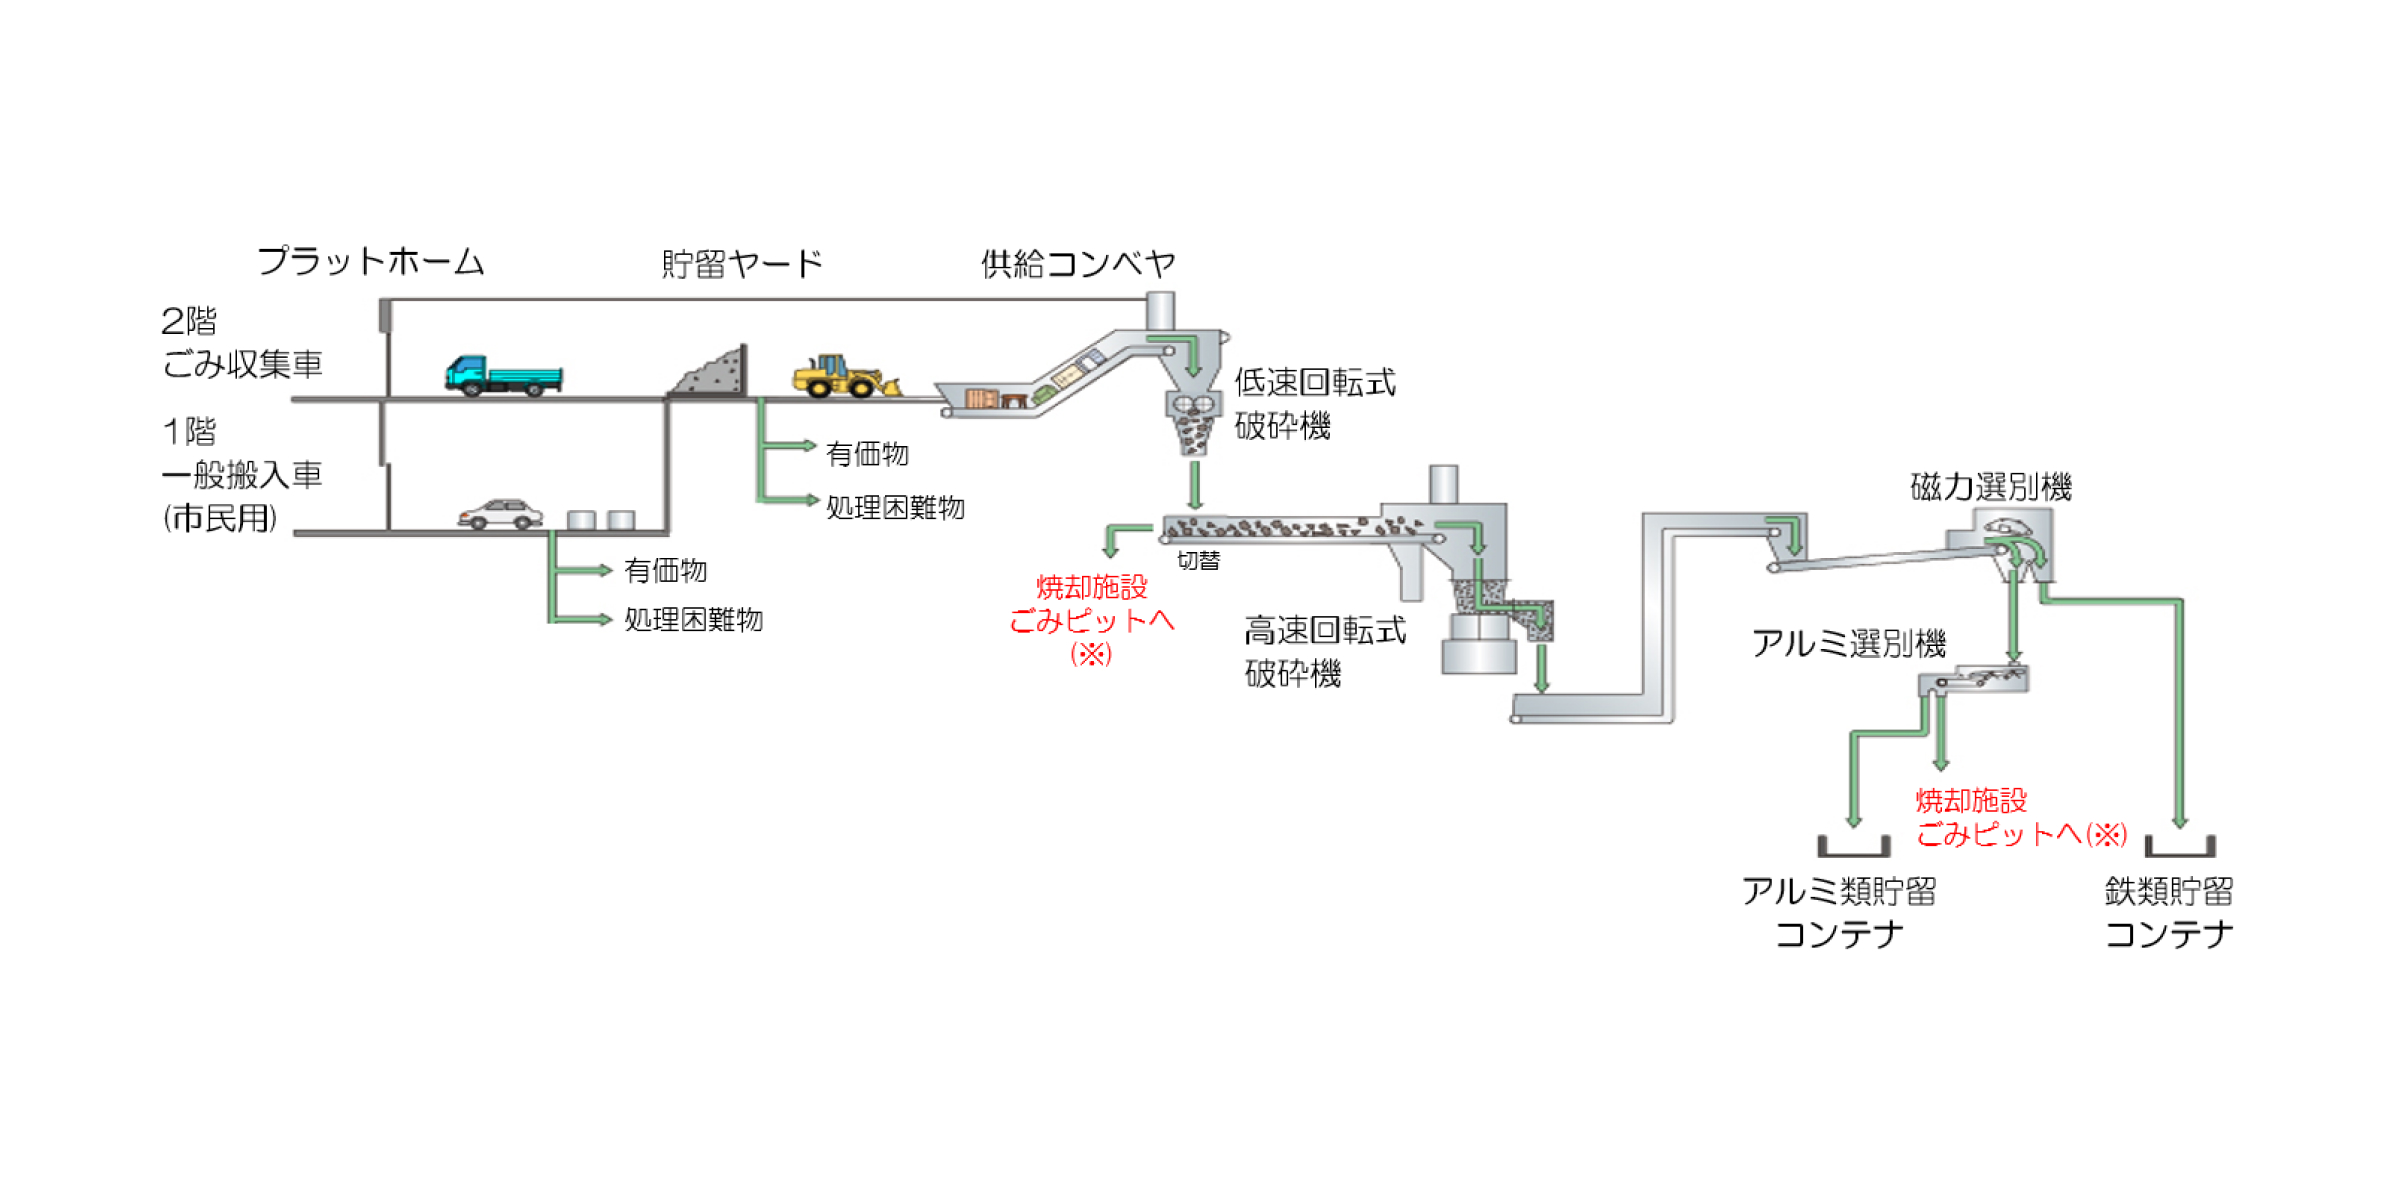 粗大ごみ処理施設のフロー図